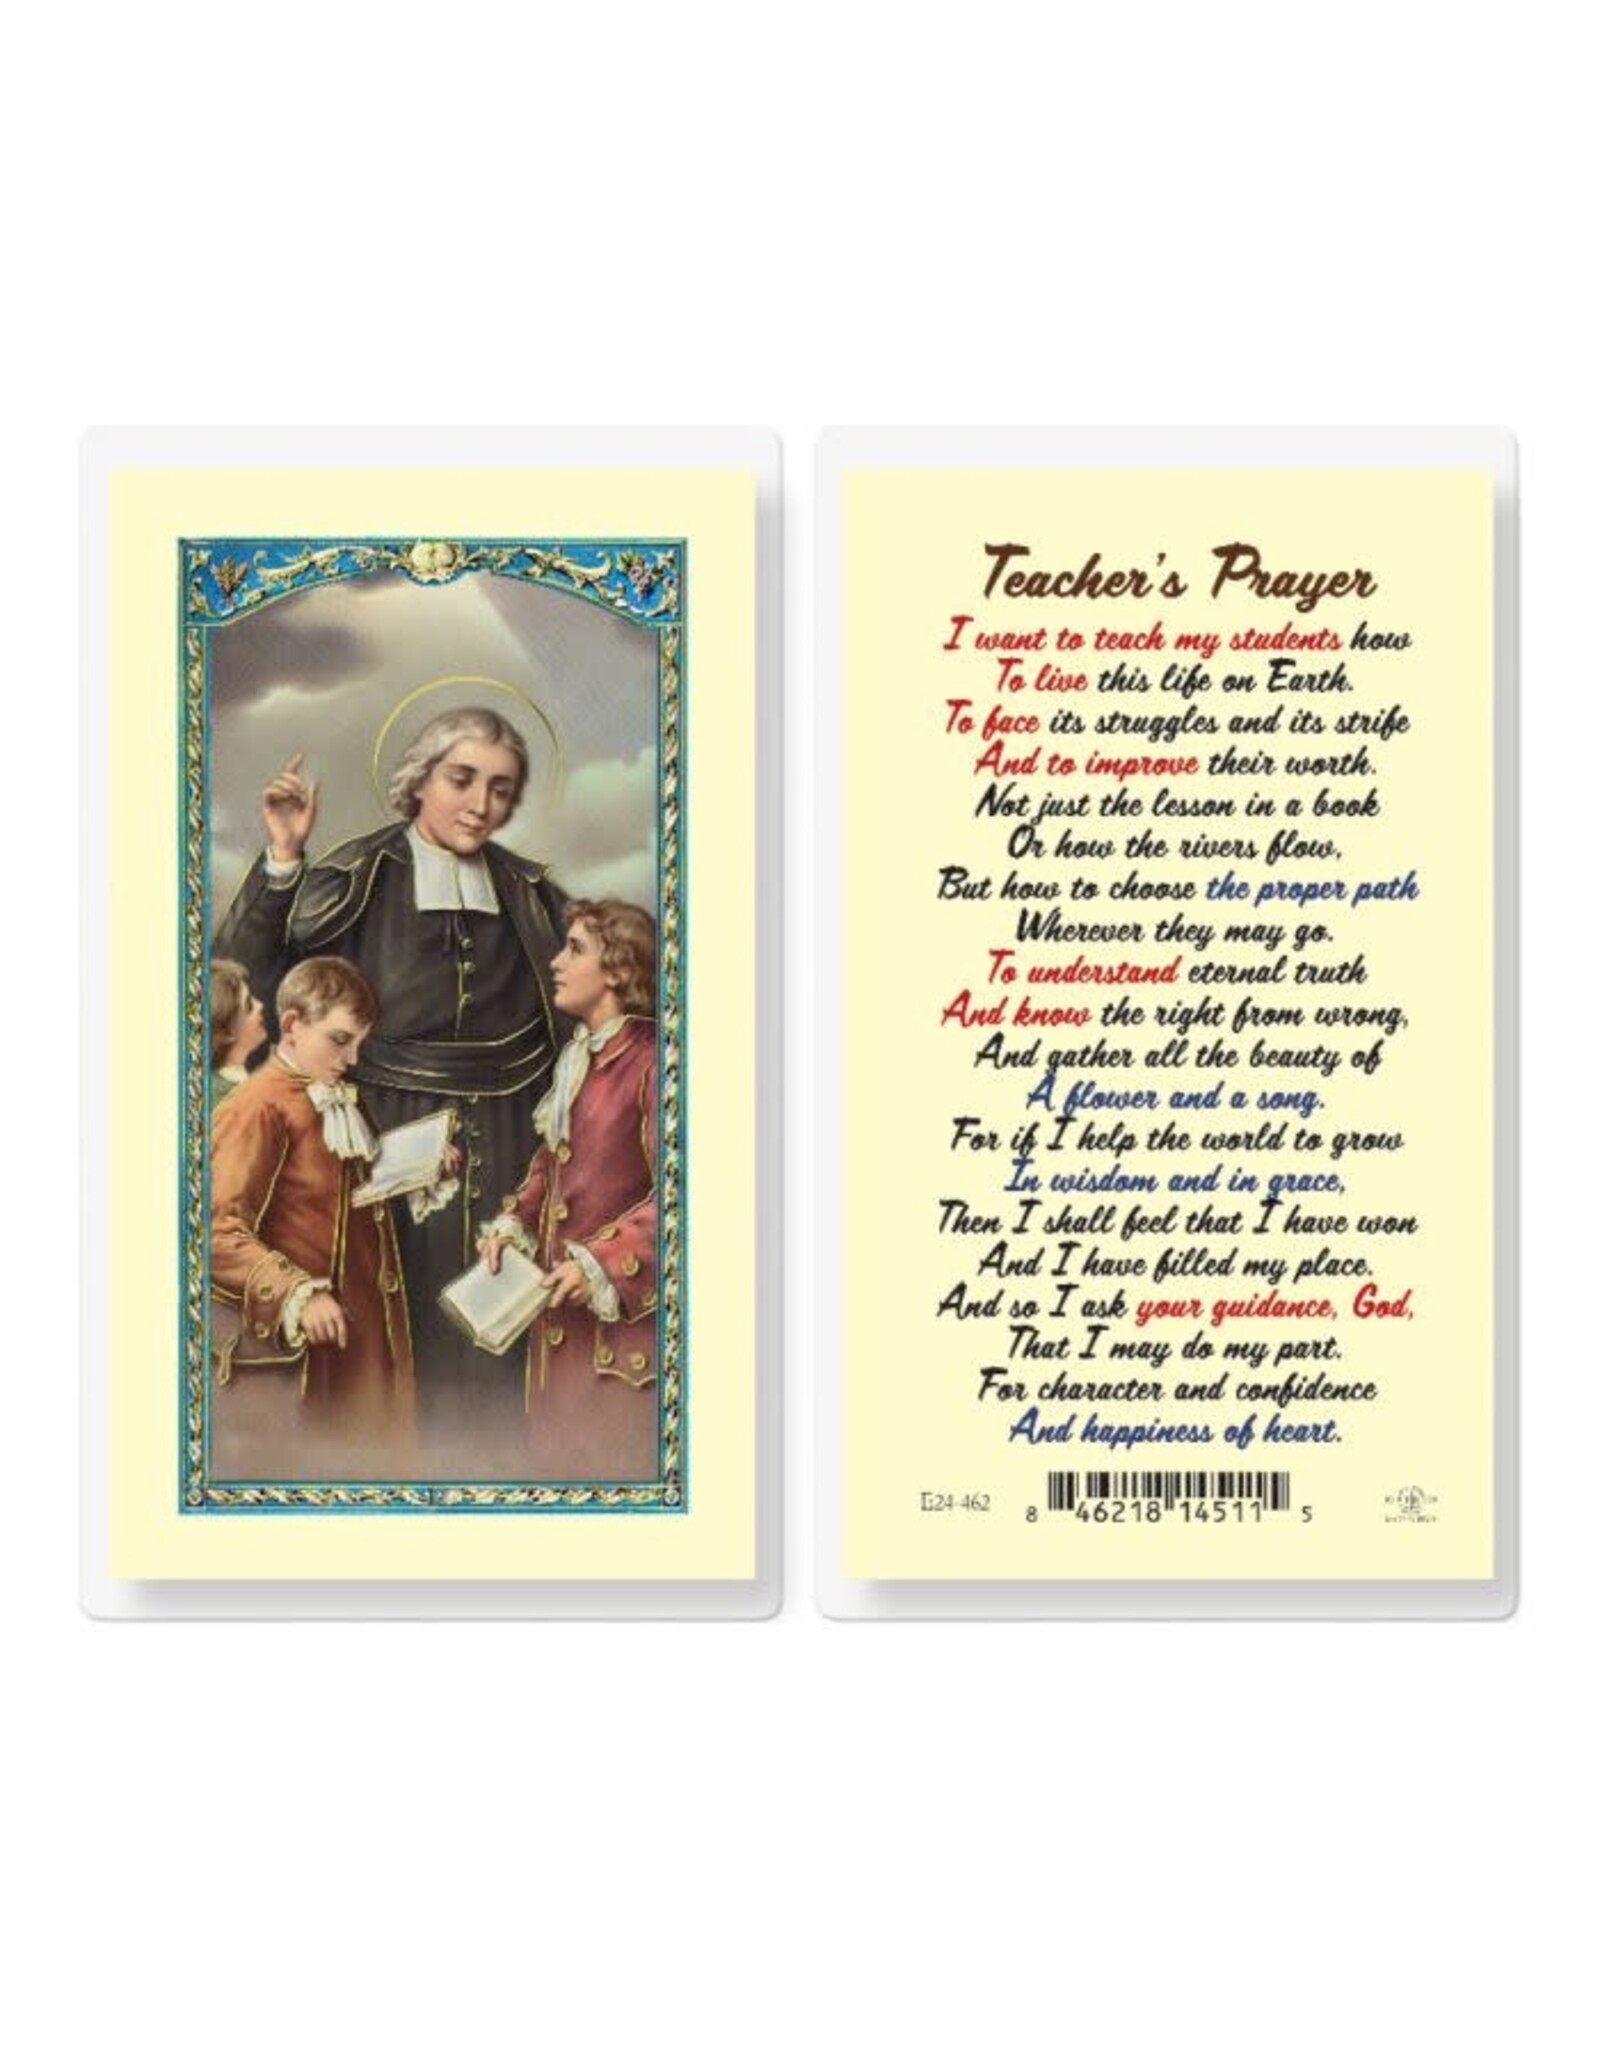 Hirten Holy Card, Laminated - Teacher's Prayer